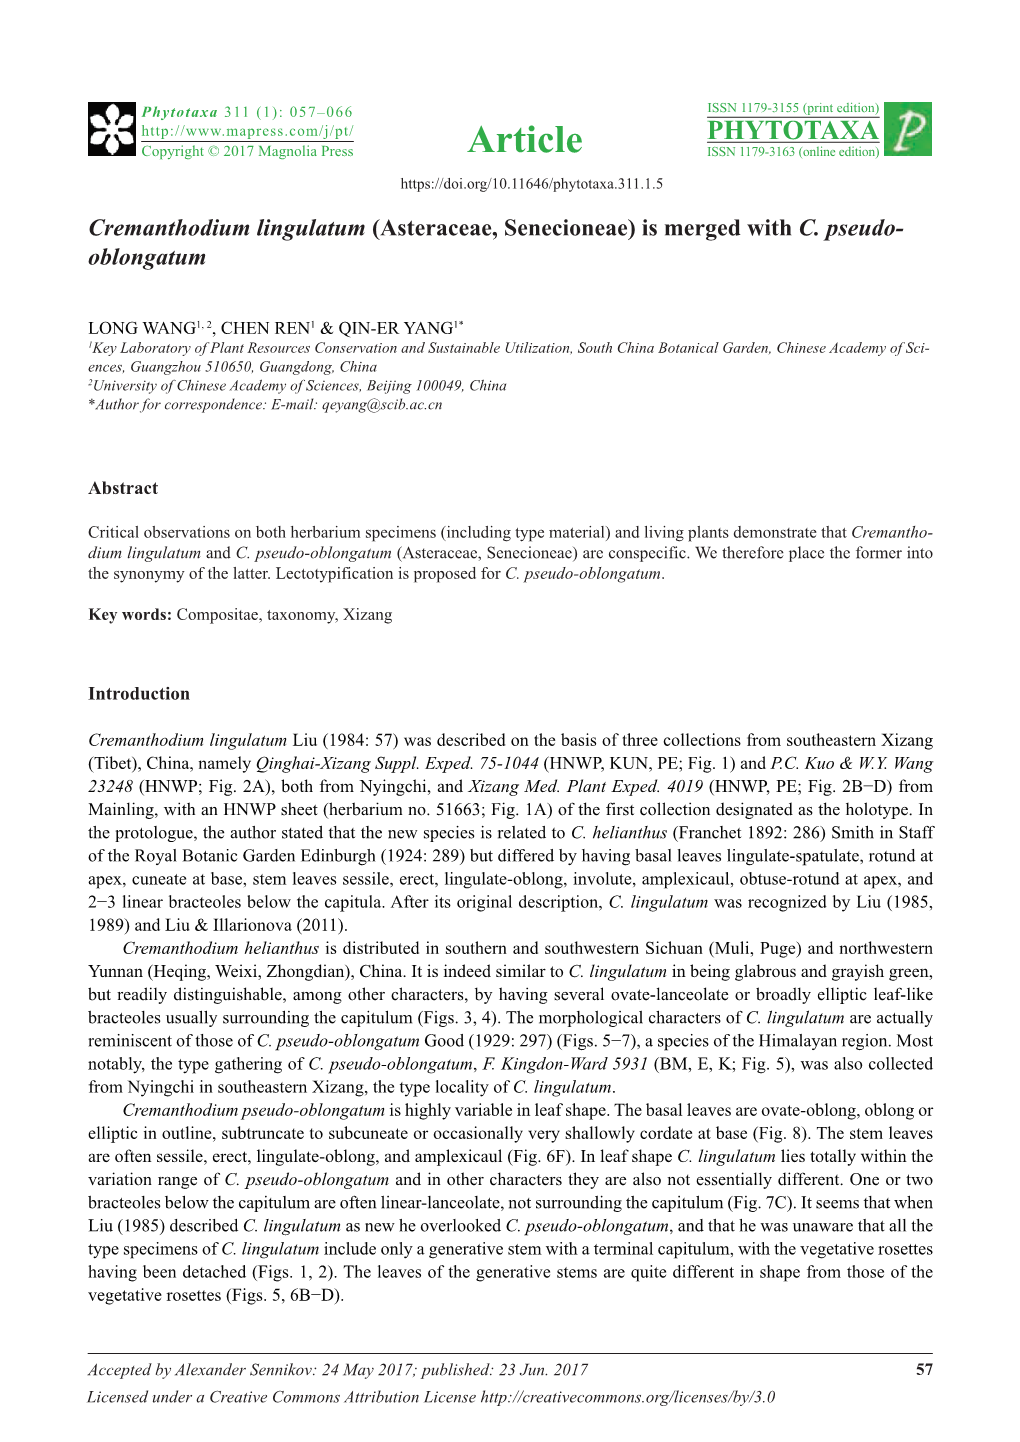 Cremanthodium Lingulatum (Asteraceae, Senecioneae) Is Merged with C